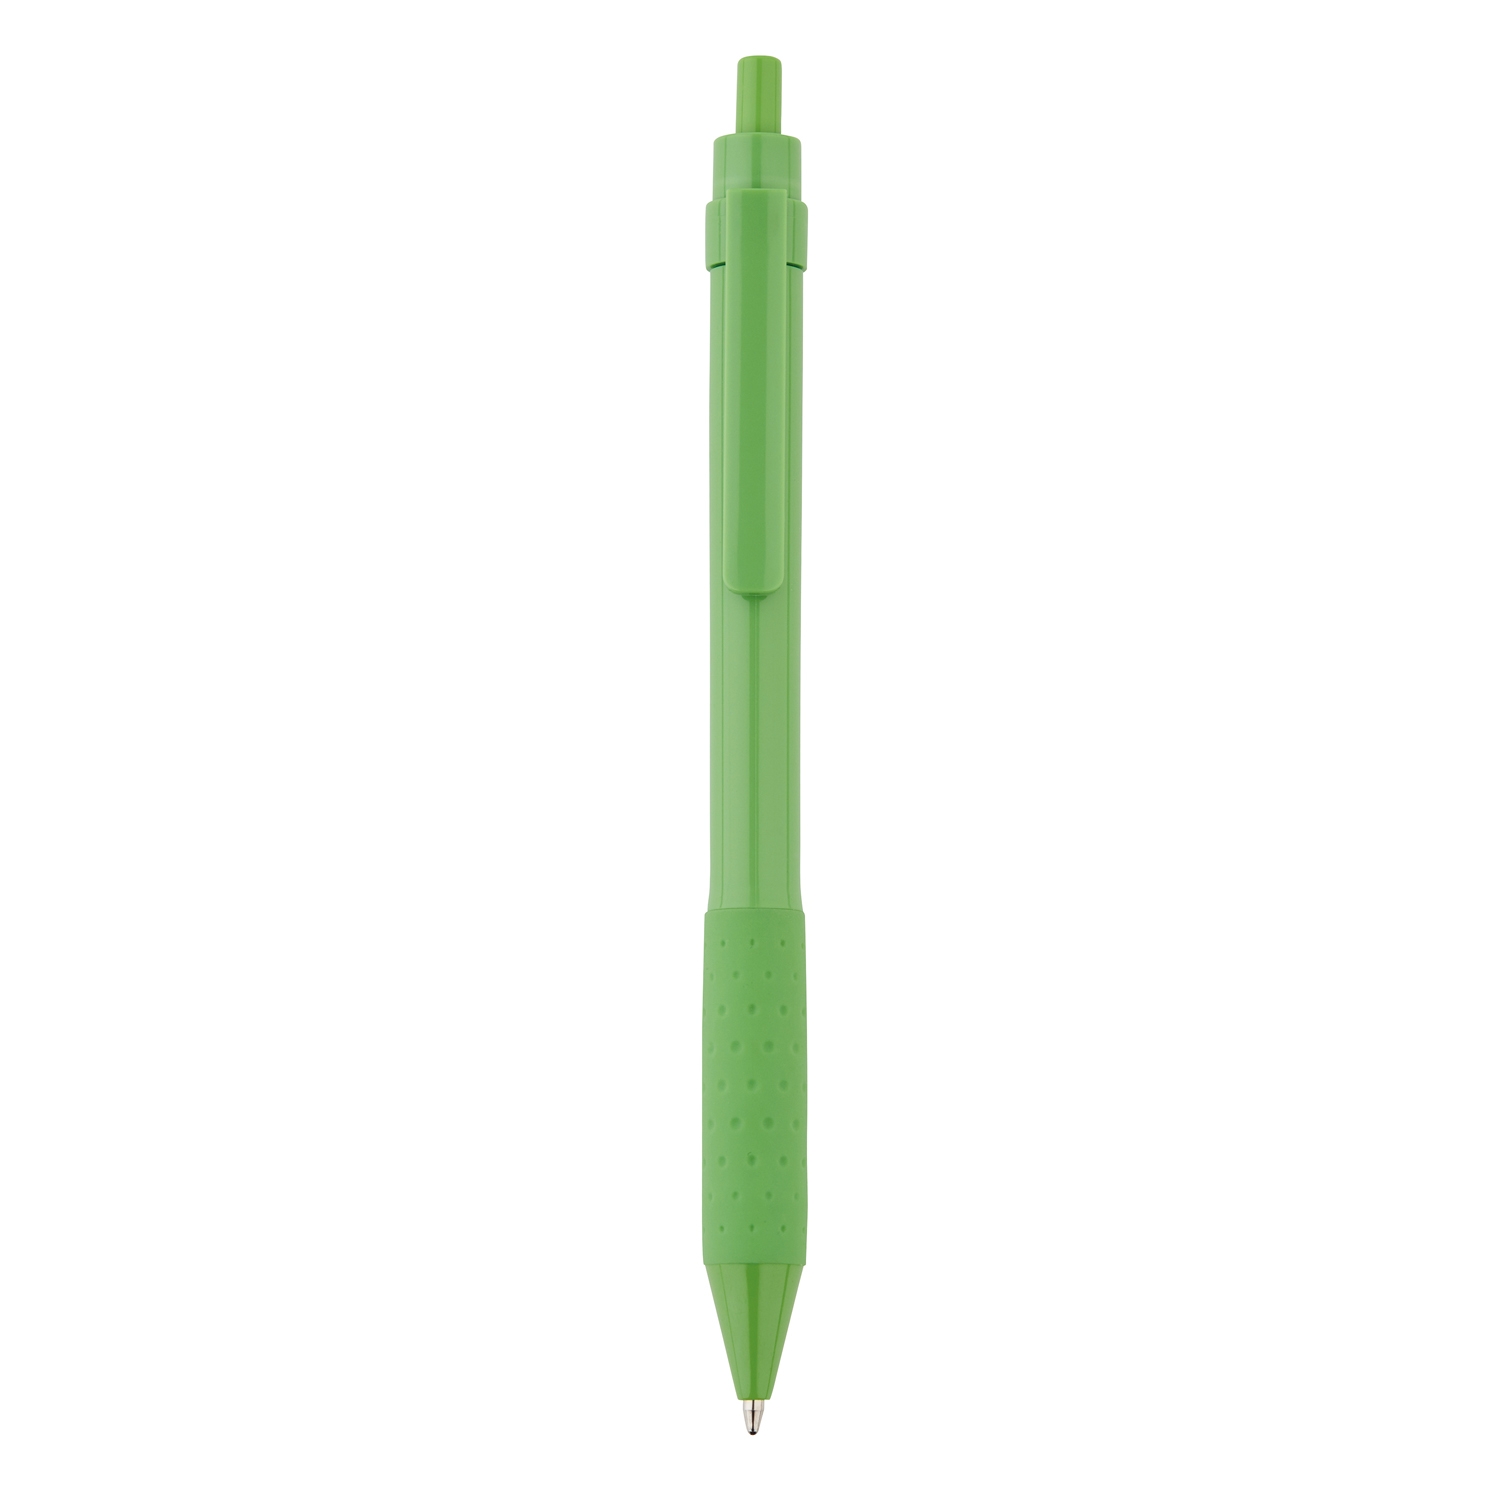 Ручка X2, зеленый, abs